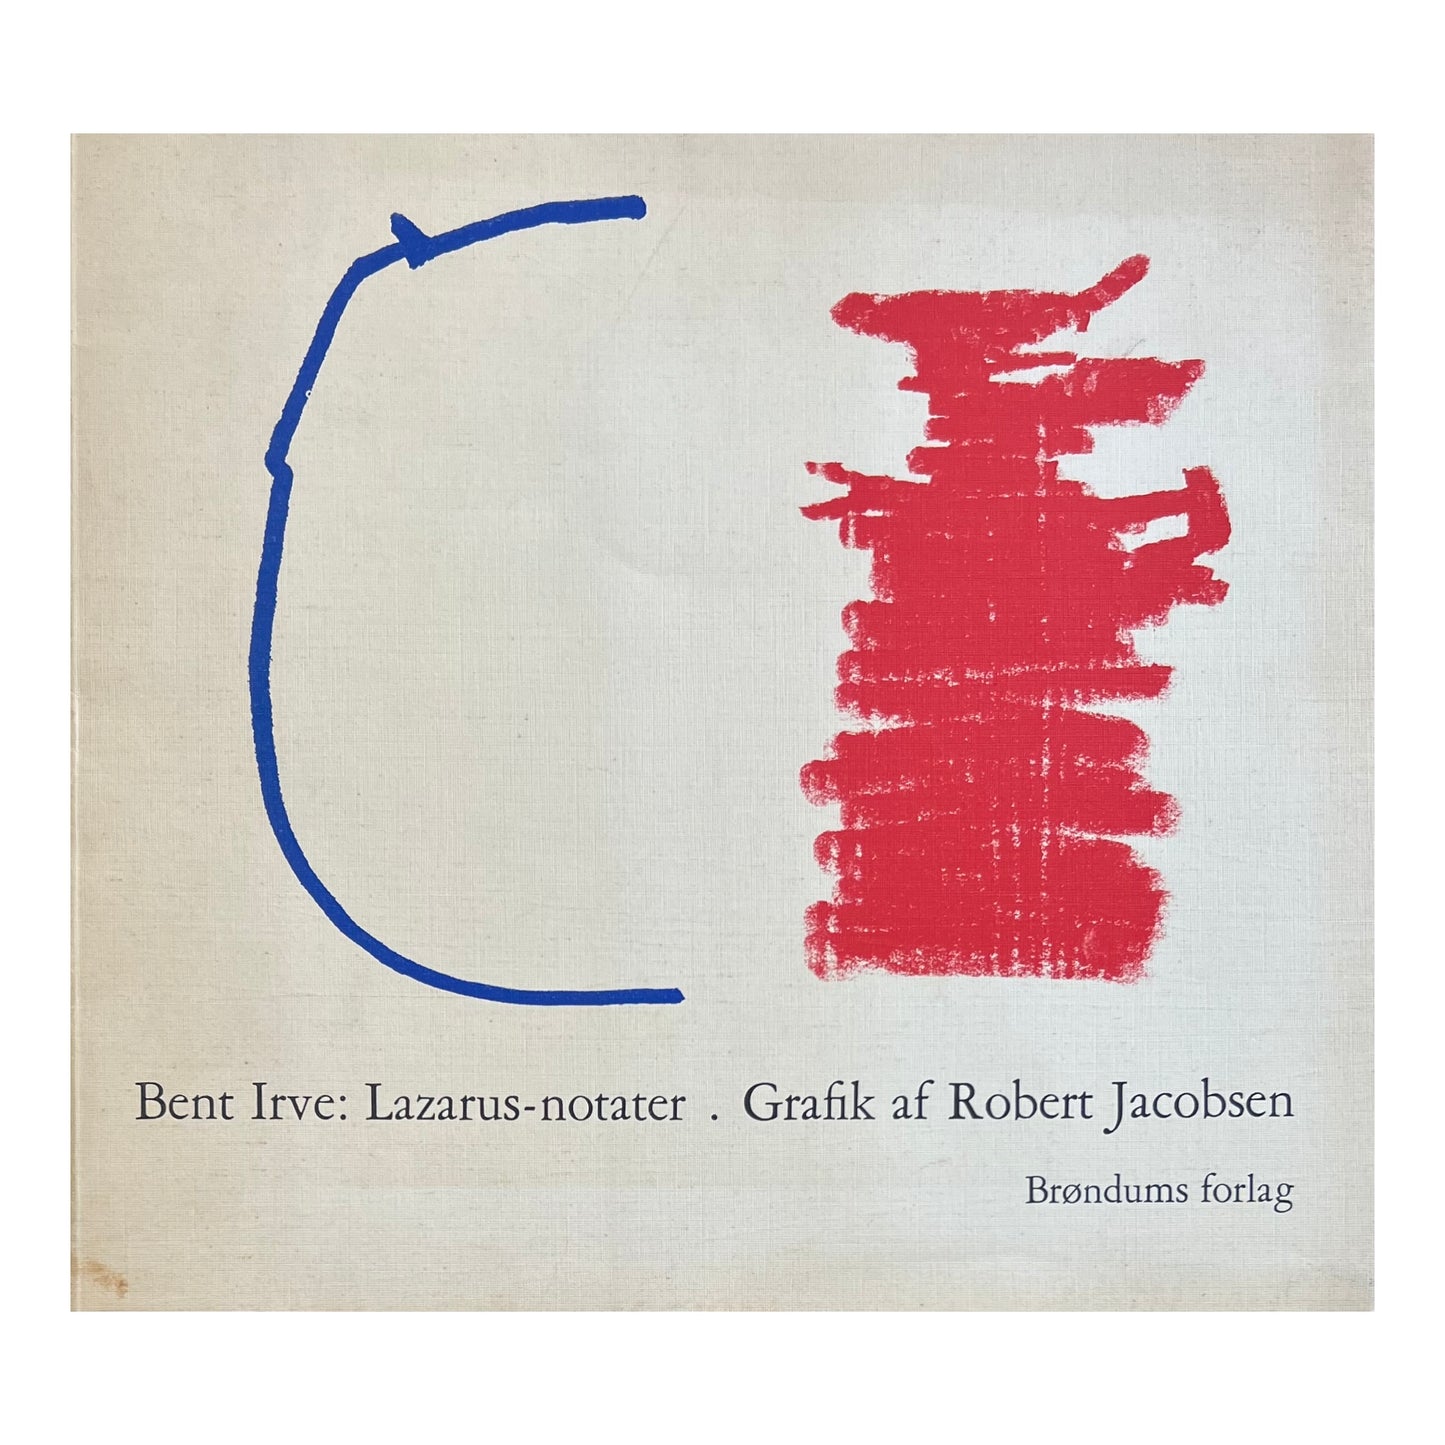 Bent Irve. “Lazarus Notes. Graphics by Robert Jacobsen”, 1971